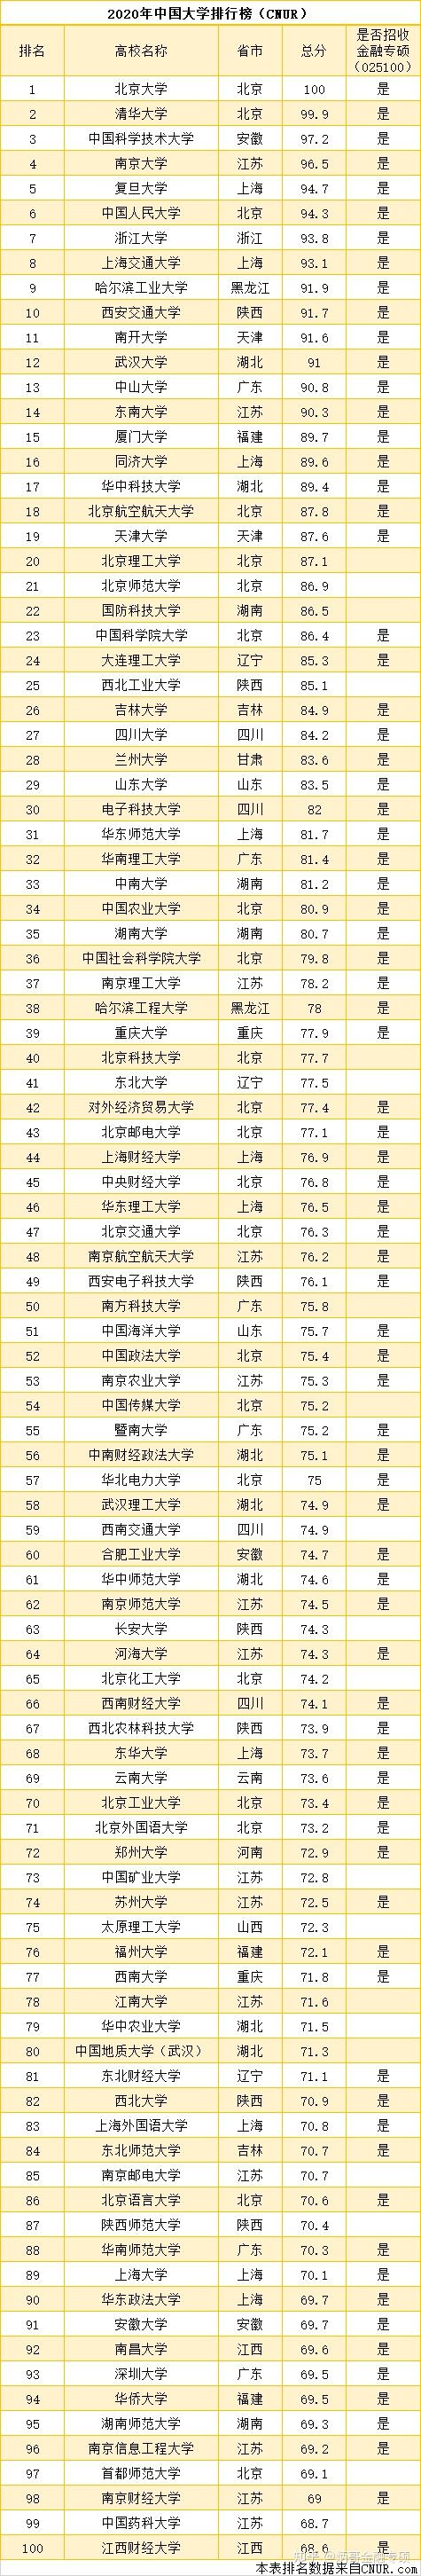 2020年中国大学百名排行榜,哪些院校招收金融金融专硕